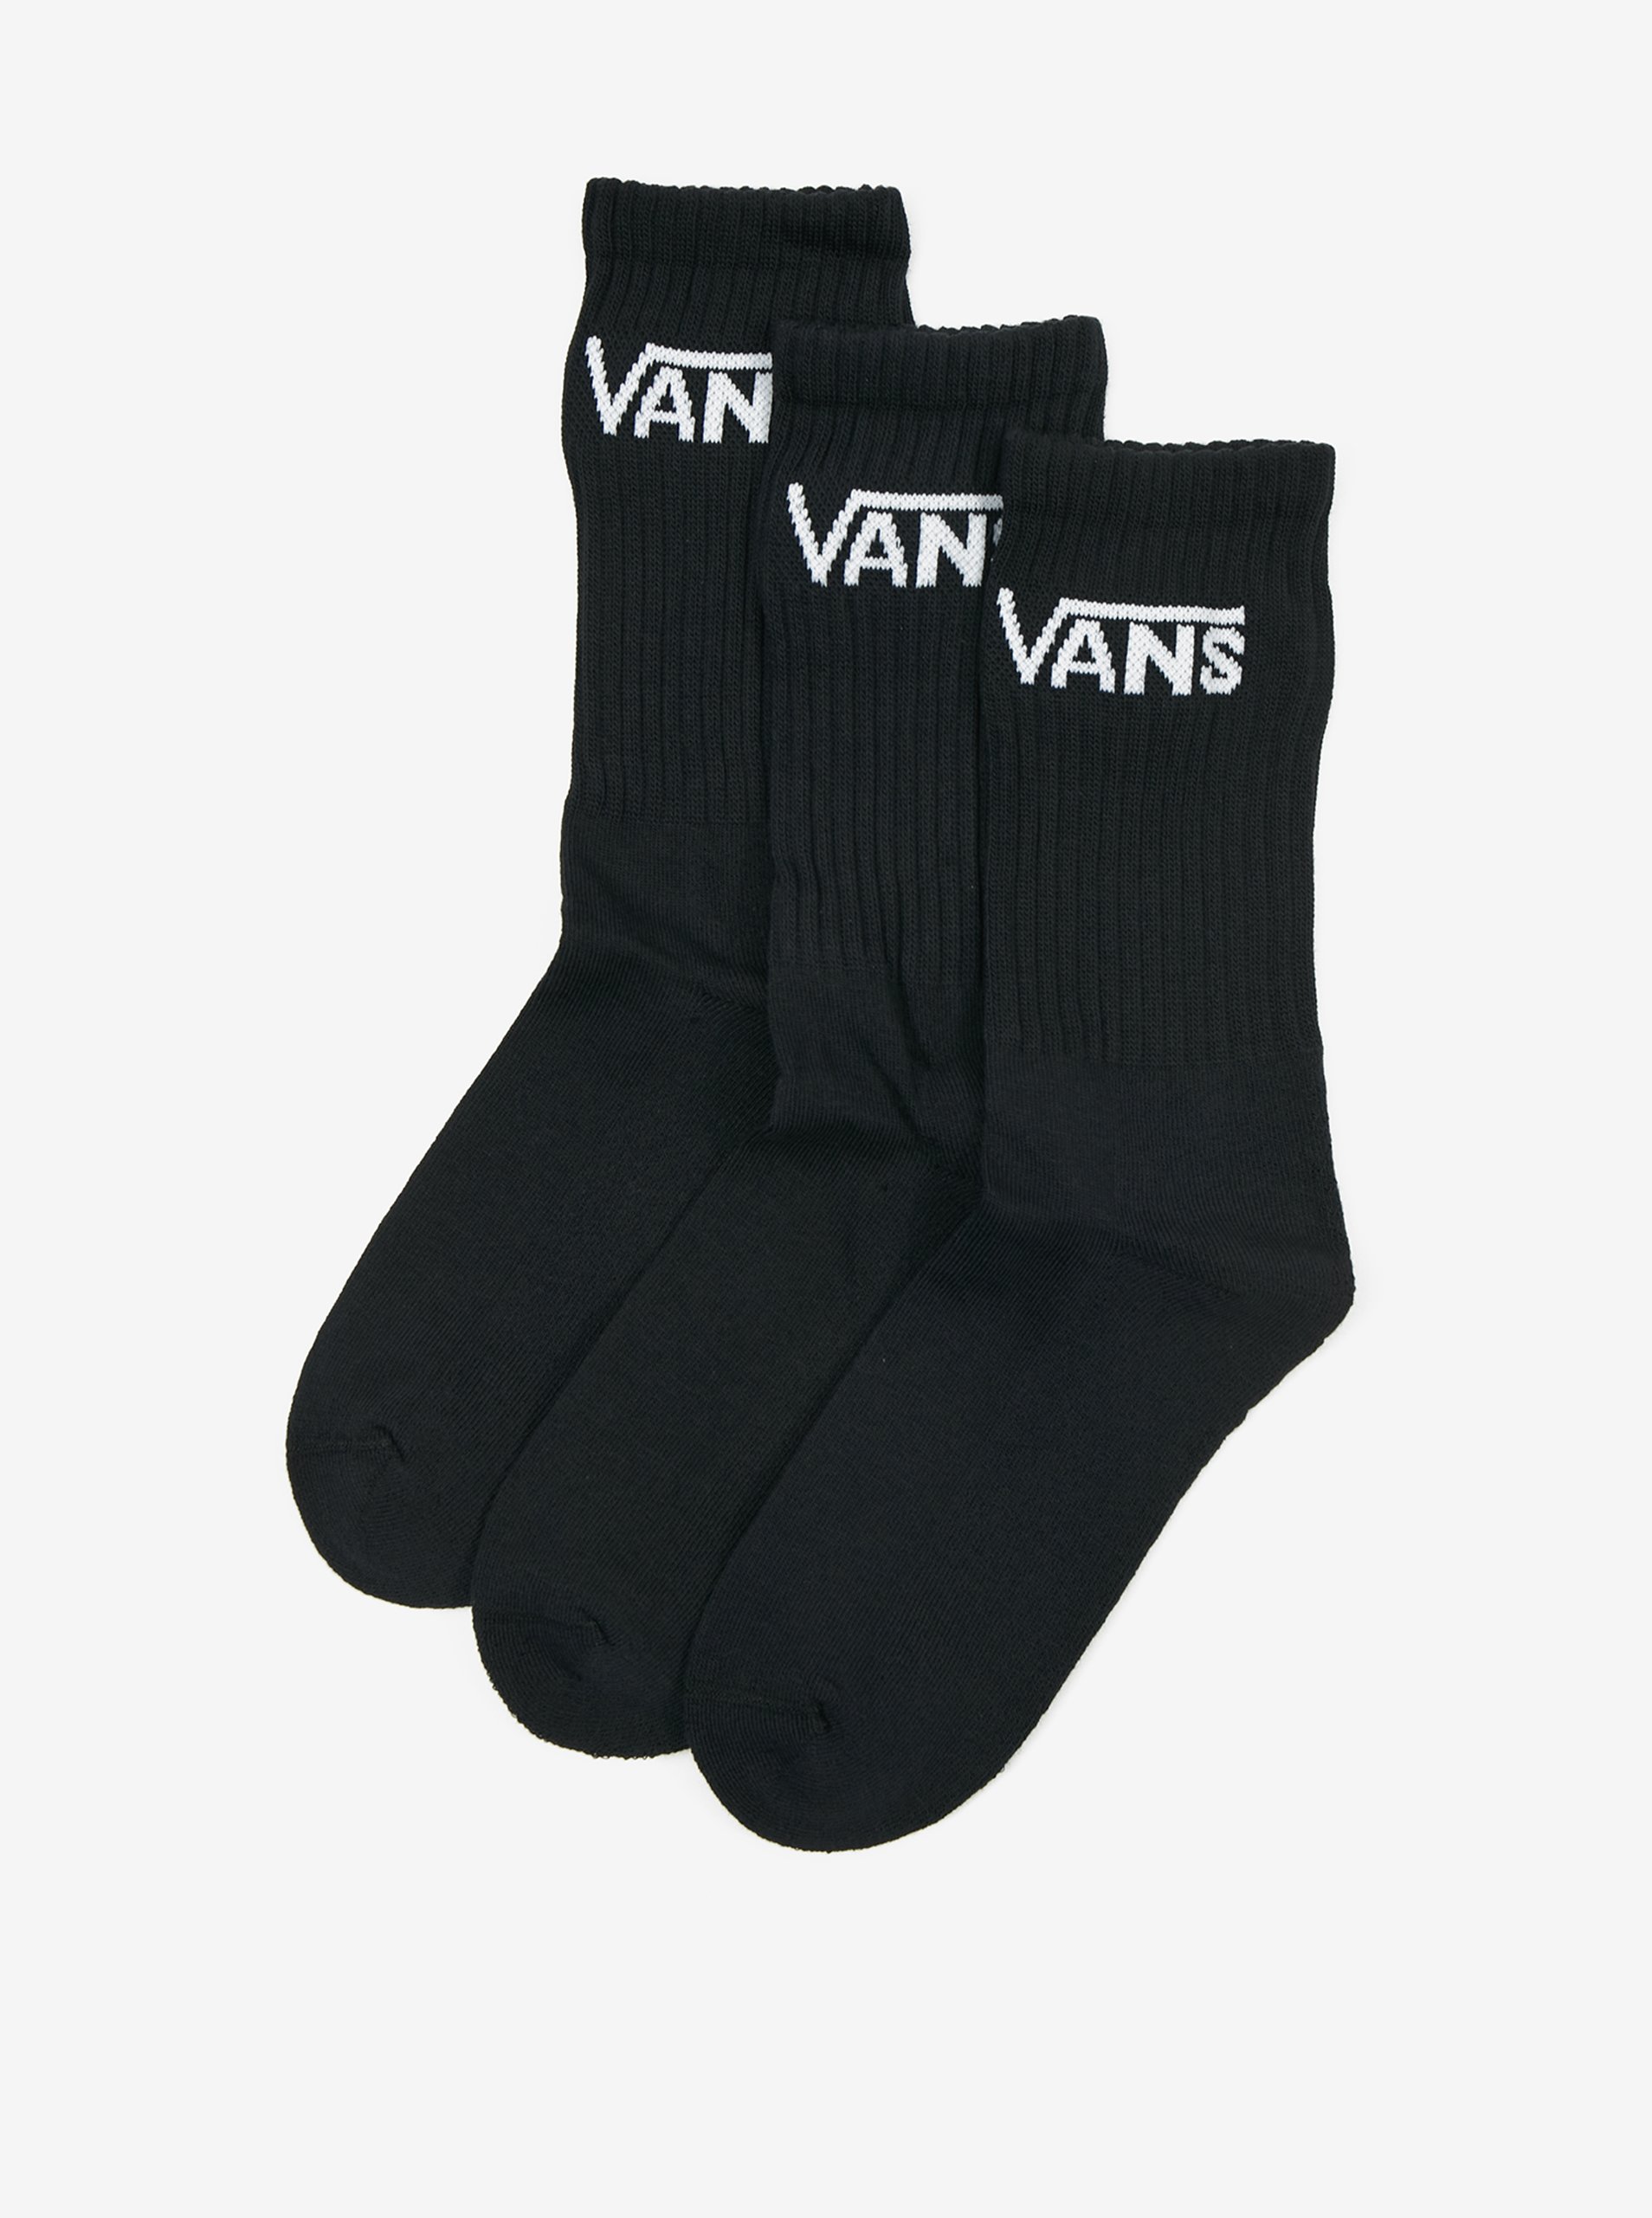 Set of three pairs of unisex socks in BLACK VANS Classic Crew - Men